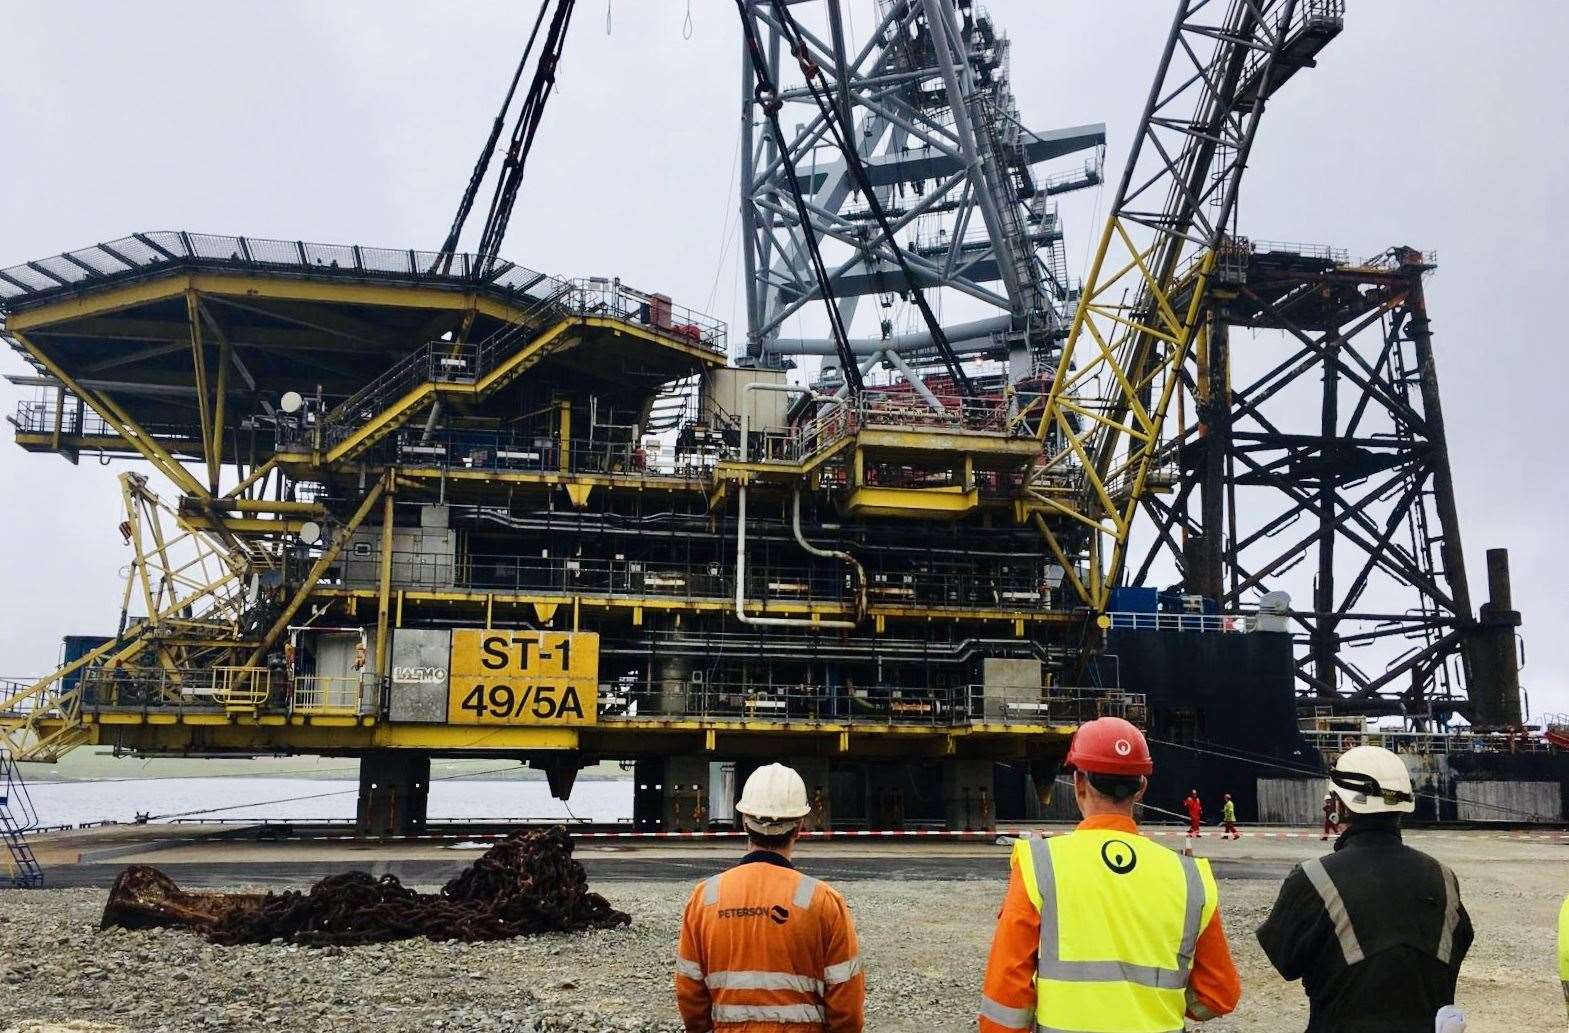 Spirit Energy’s ST-1 platforms arrived at Dales Voe, Shetland, for decommissioning.